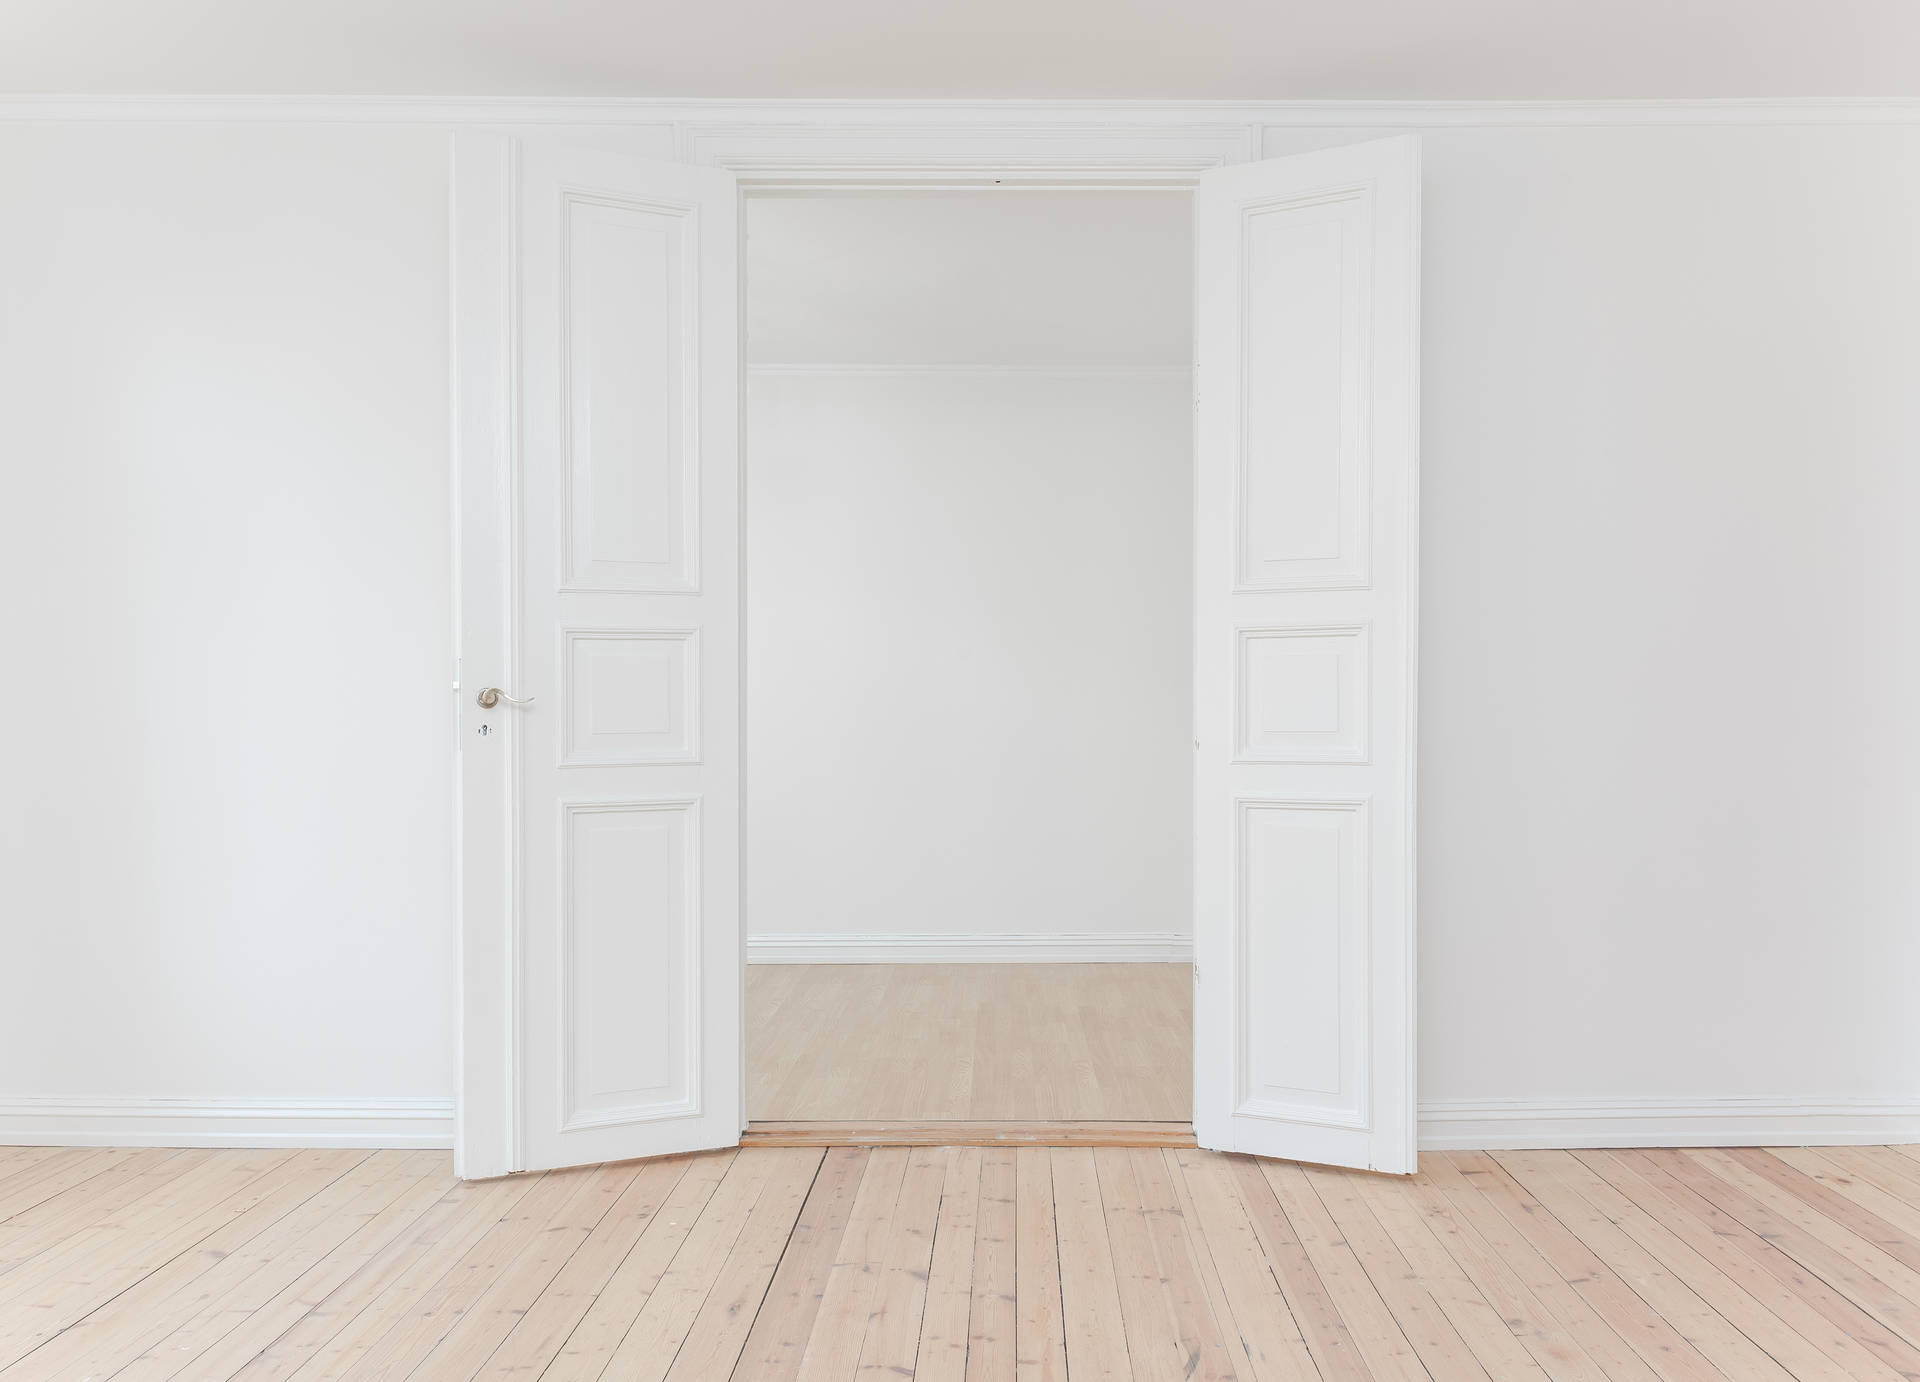 Minimalist White Room